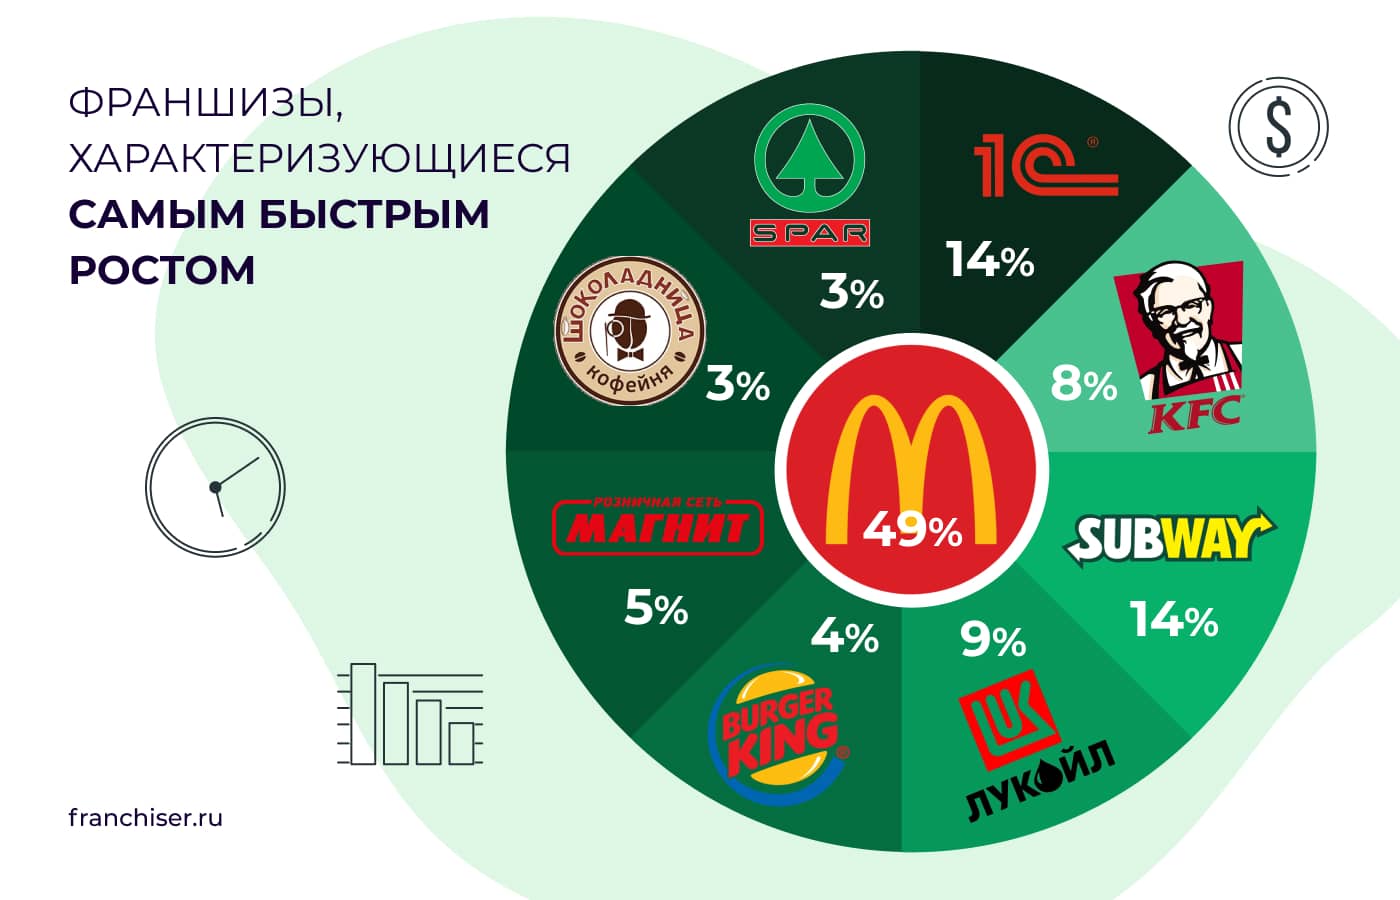 Франшизы в россии форбс продвижение товаров на рынок реклама